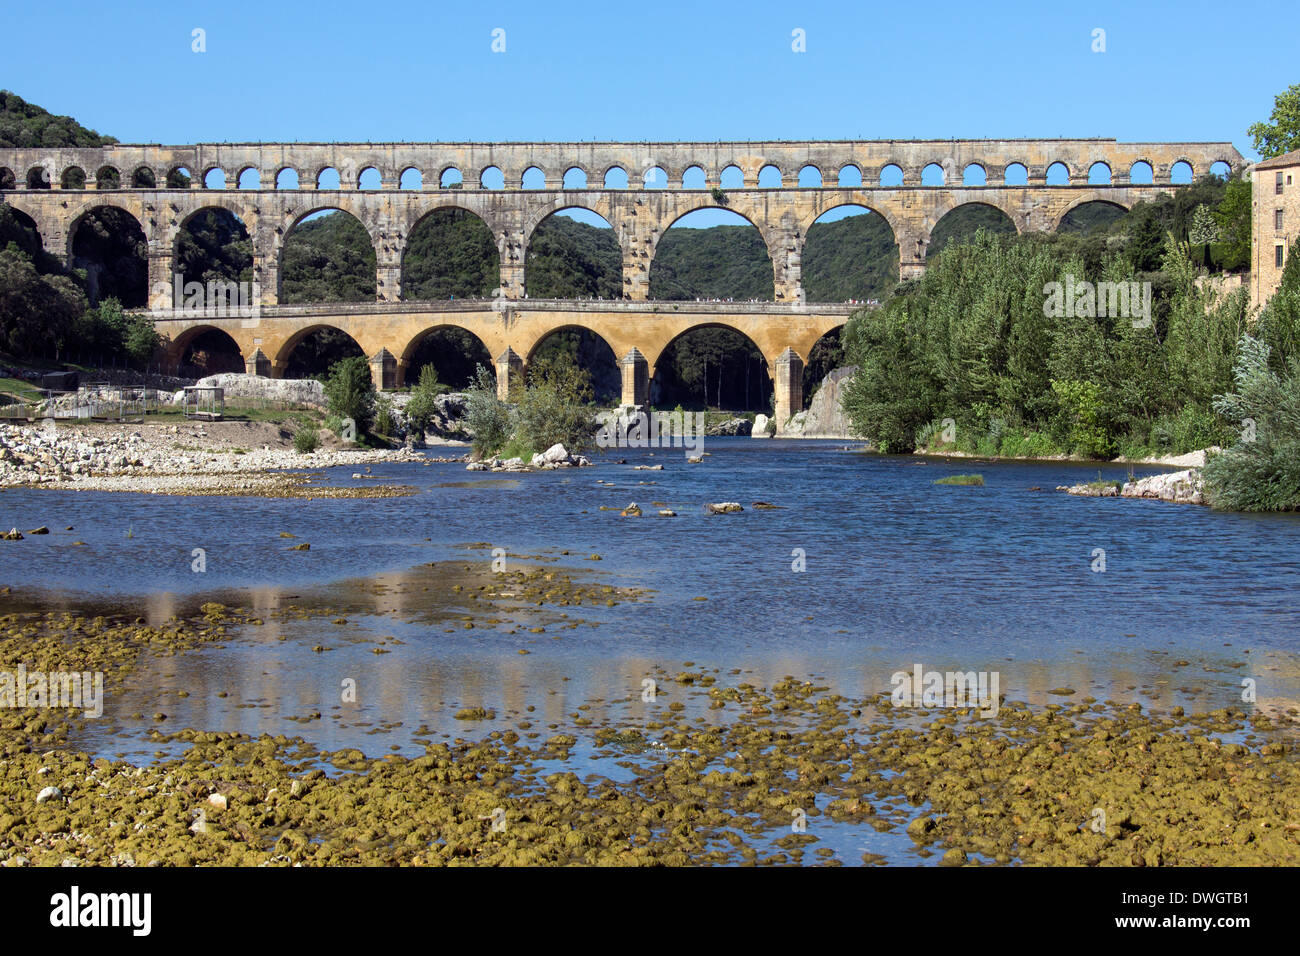 Pont du Gard aqueduc romain sur le Gardon près de Remoulins, dans le sud de la France Banque D'Images